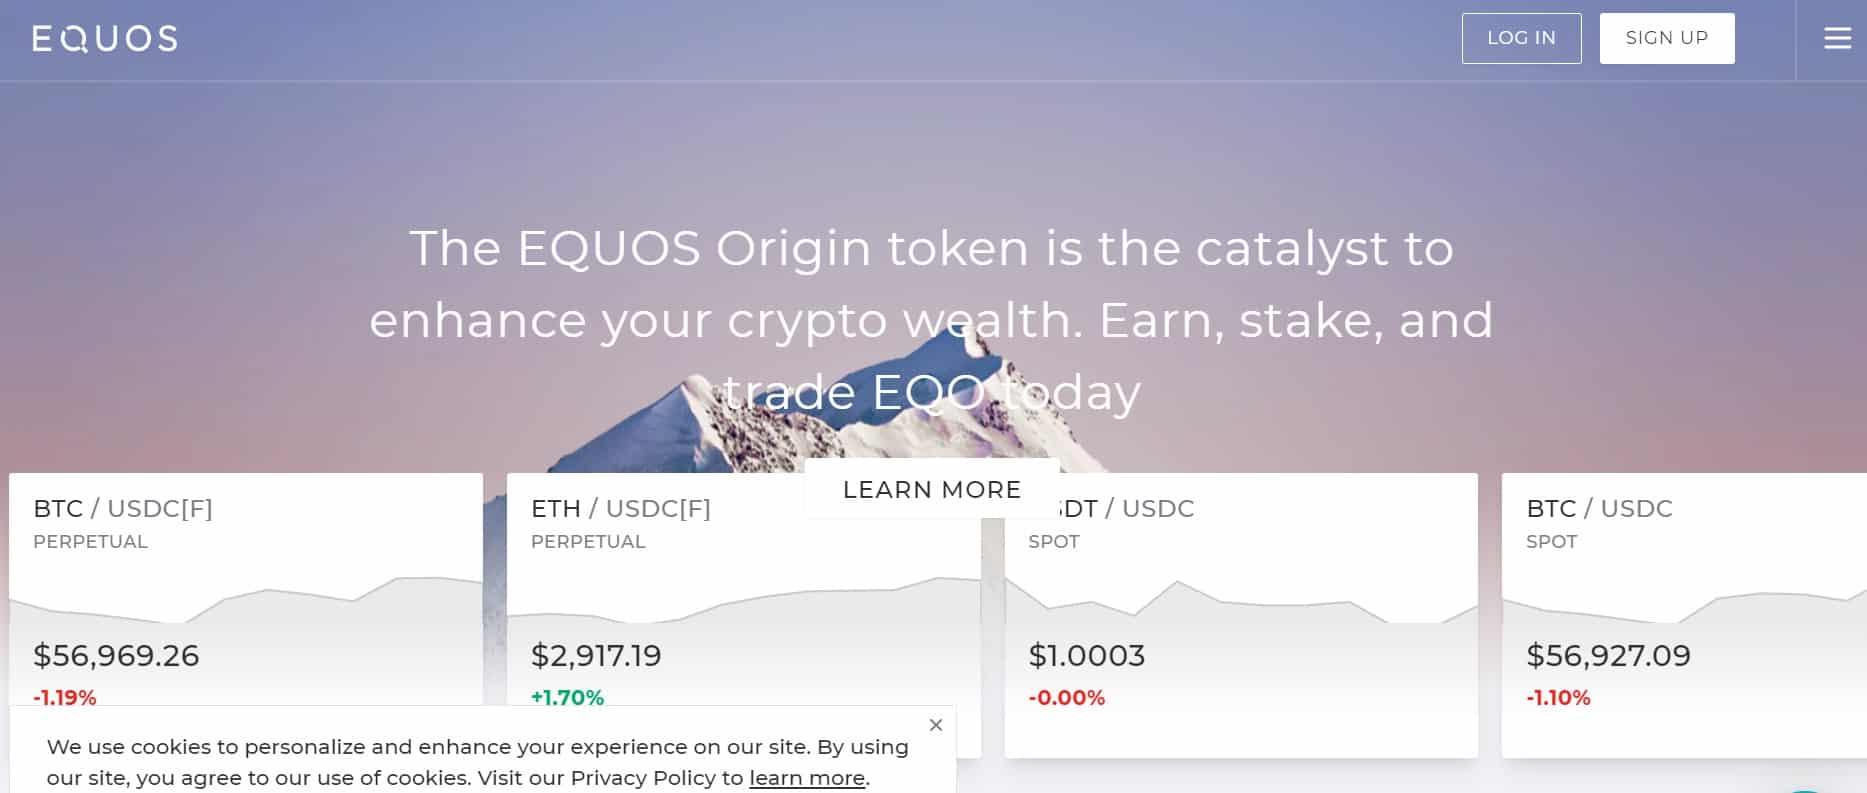 EQUOS website